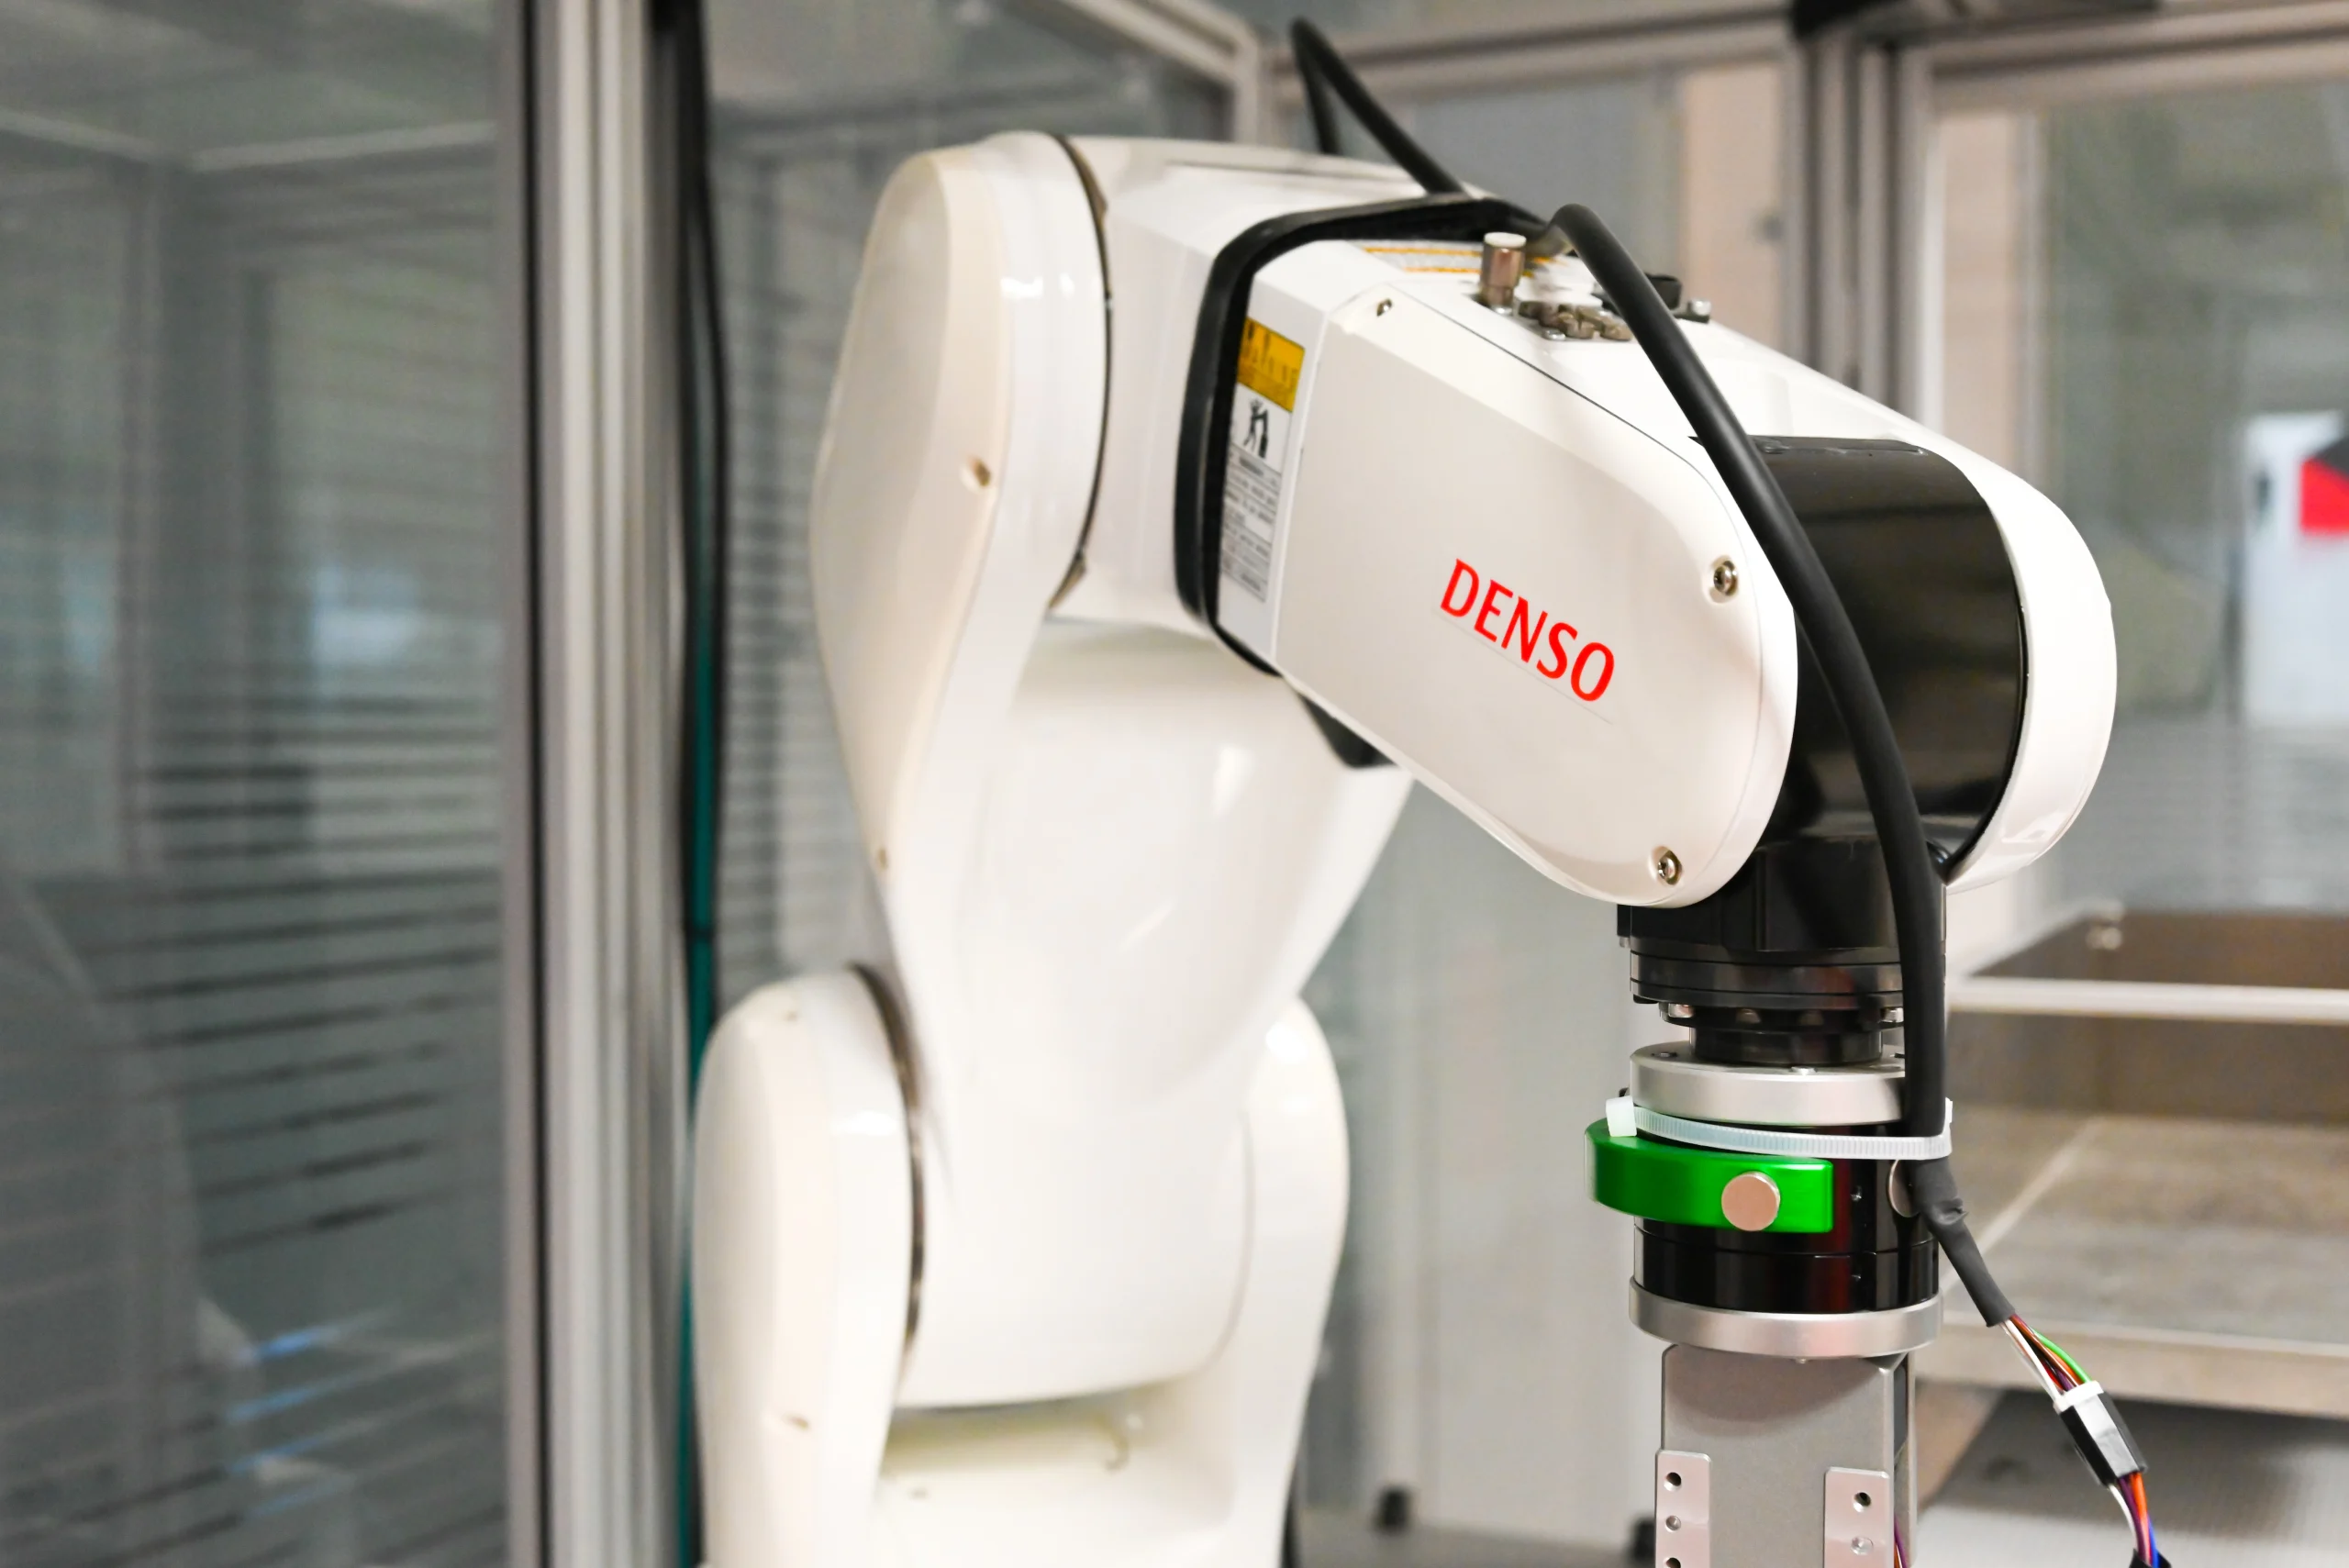 Robot Denso Rovotics Showroom de Robótica